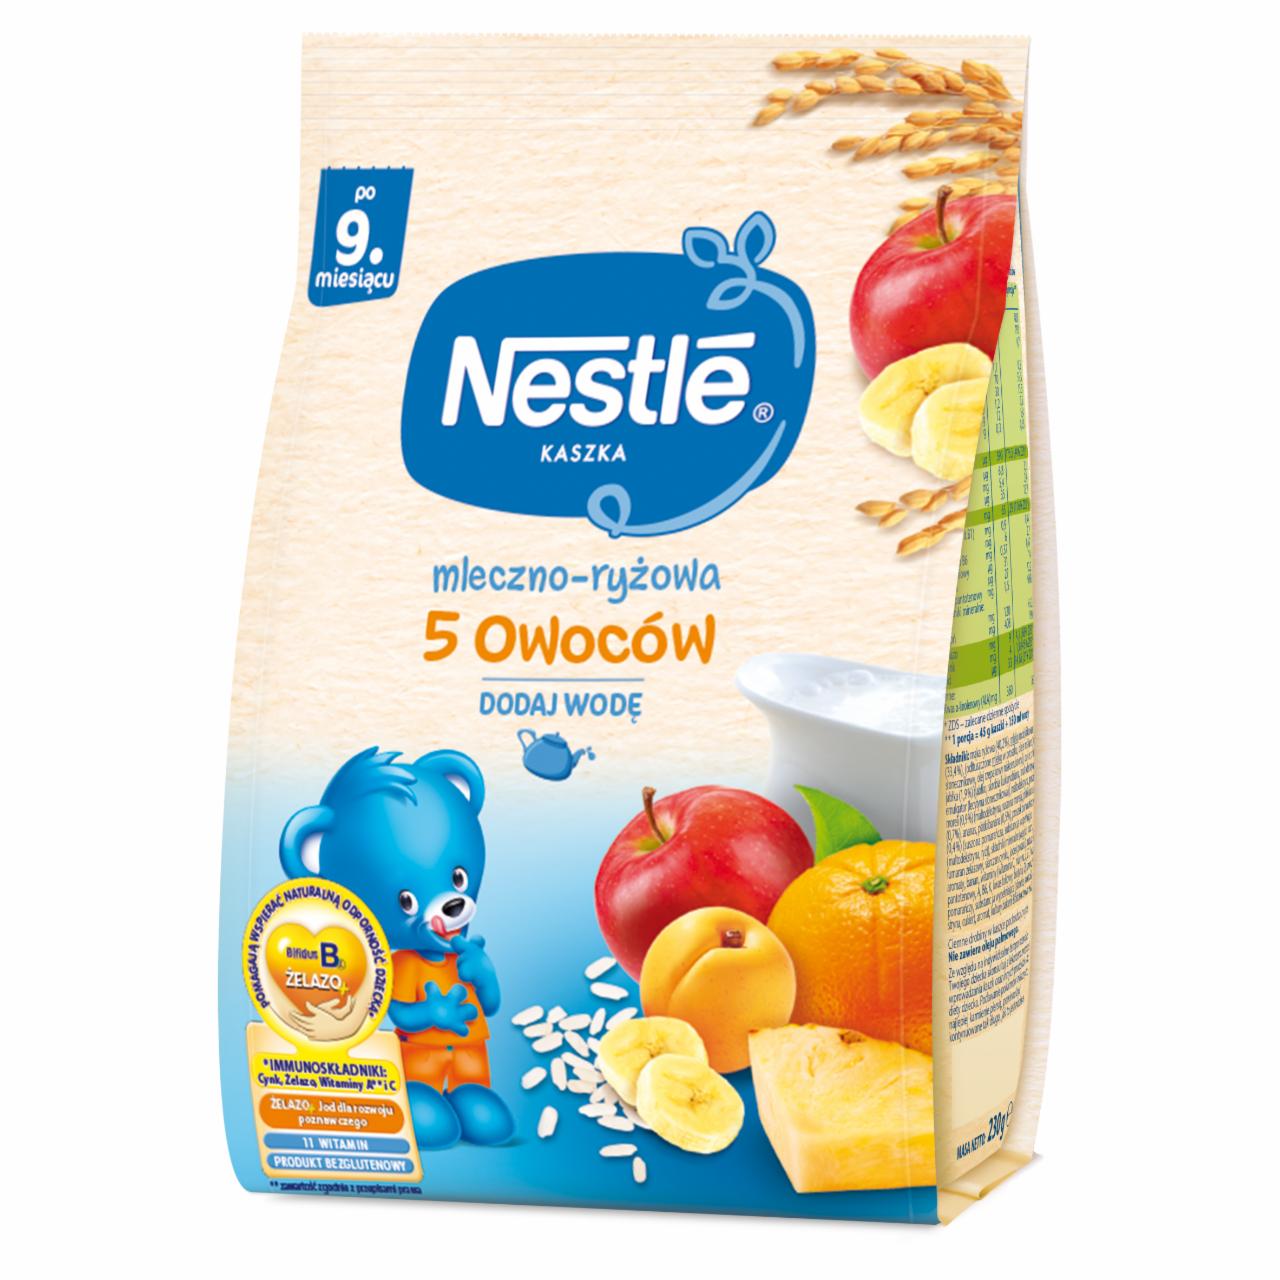 Zdjęcia - Nestlé Kaszka mleczno-ryżowa 5 owoców dla niemowląt po 9. miesiącu 230 g